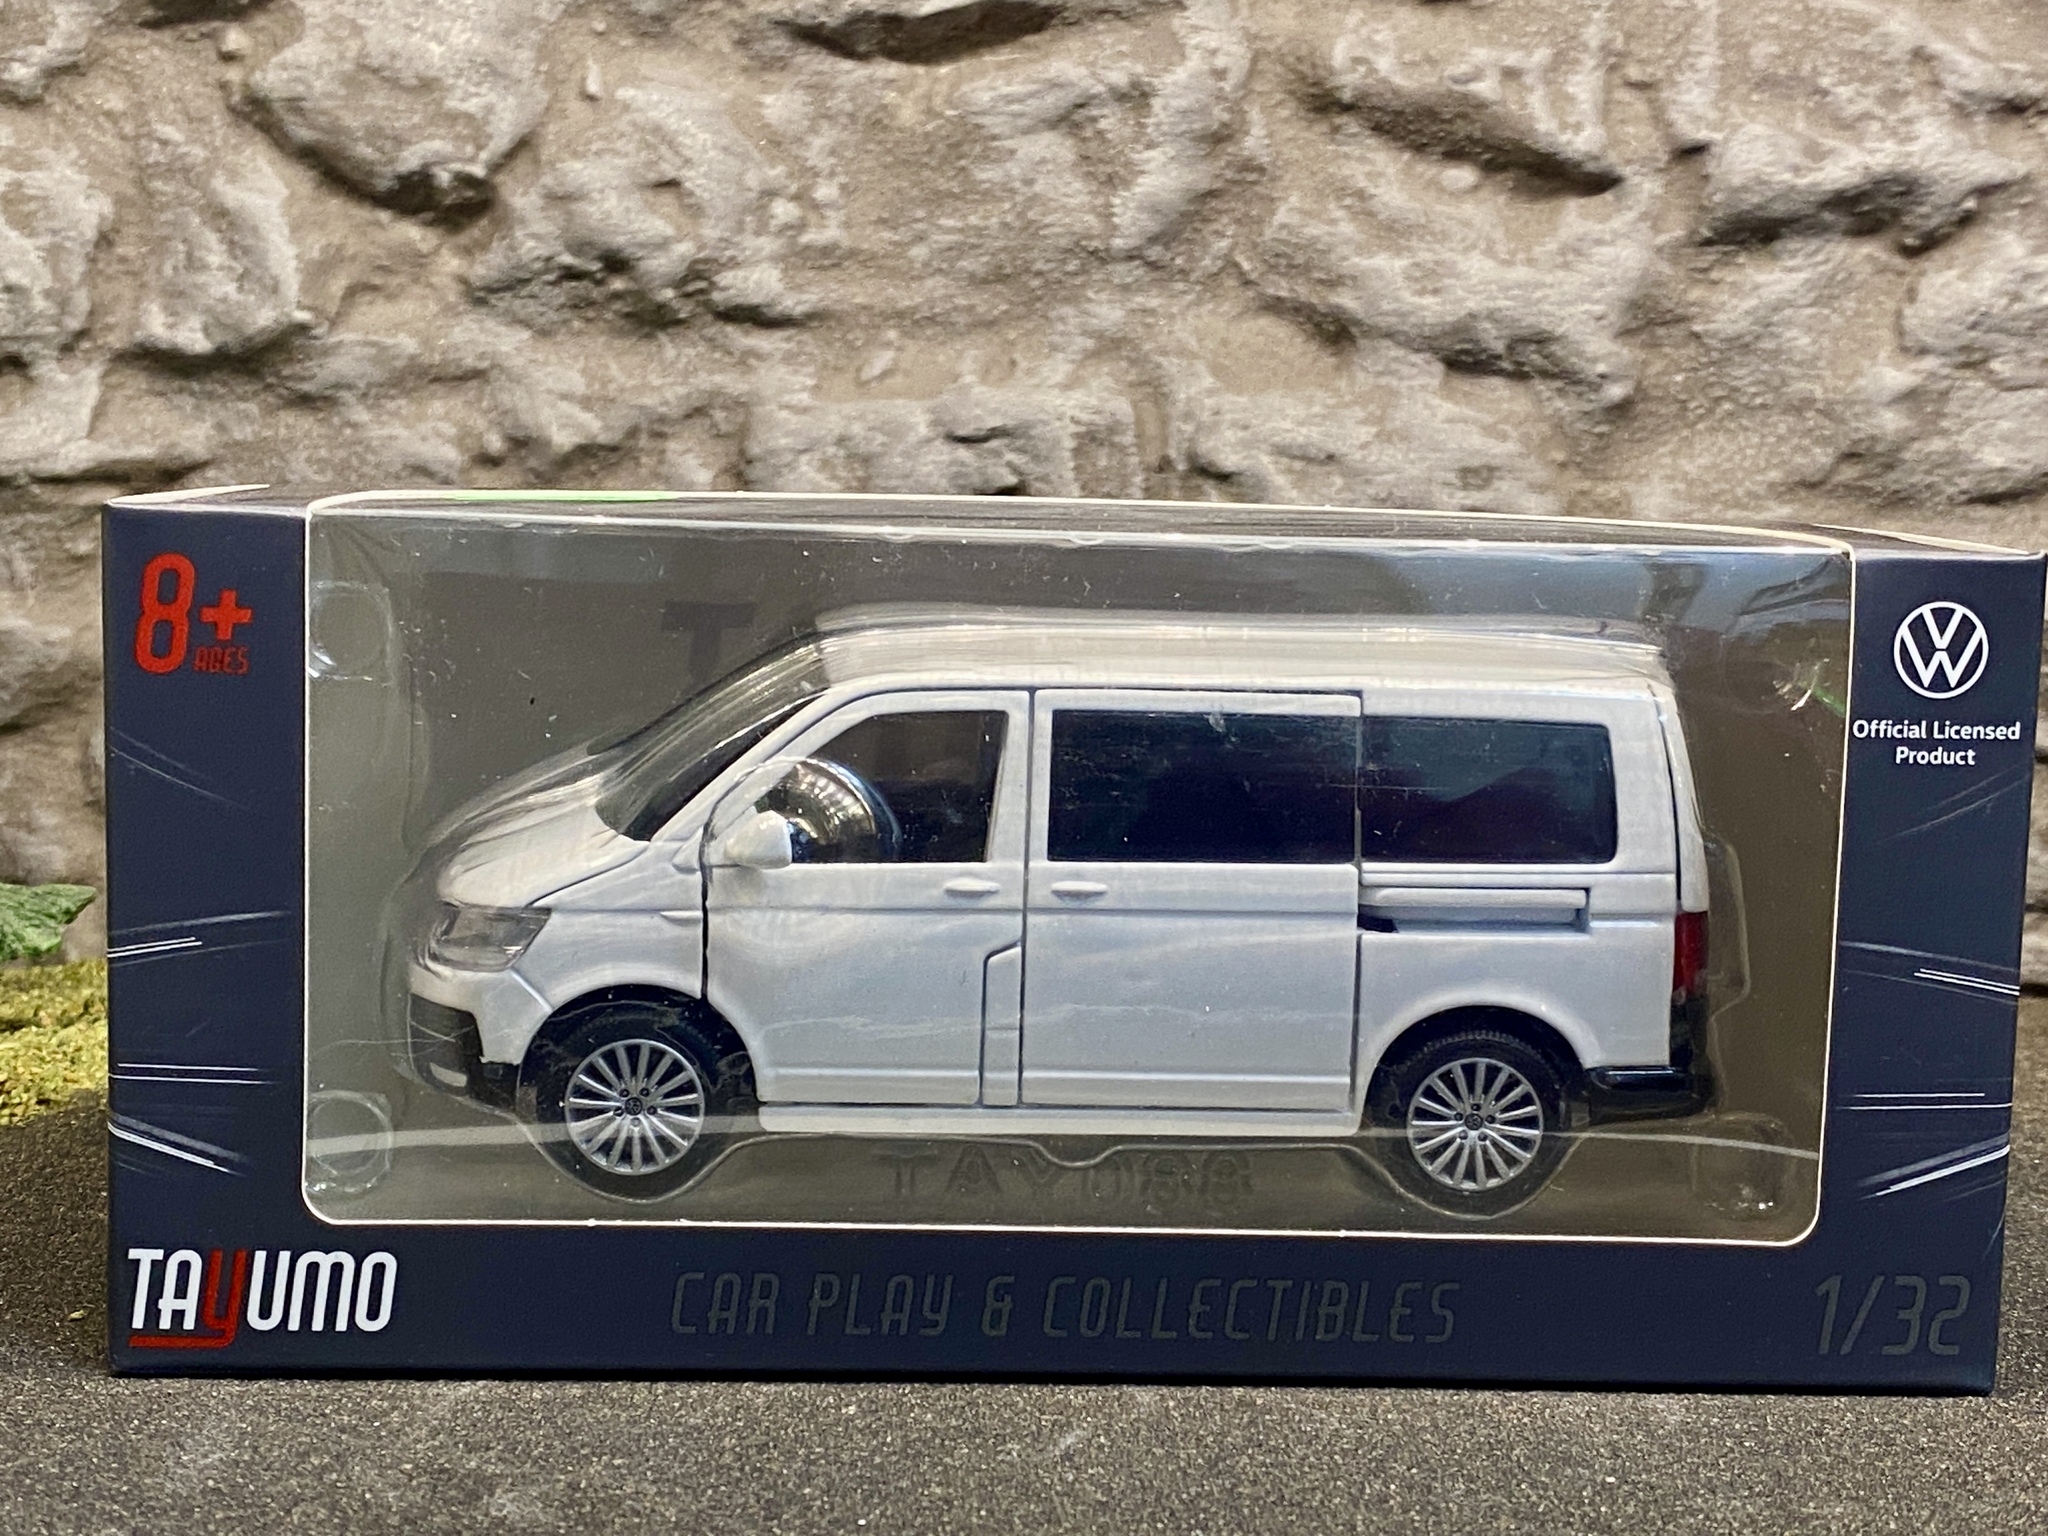 Skala 1/32 Volkswagen Multivan, Vit, Svart kartong från Tayumo